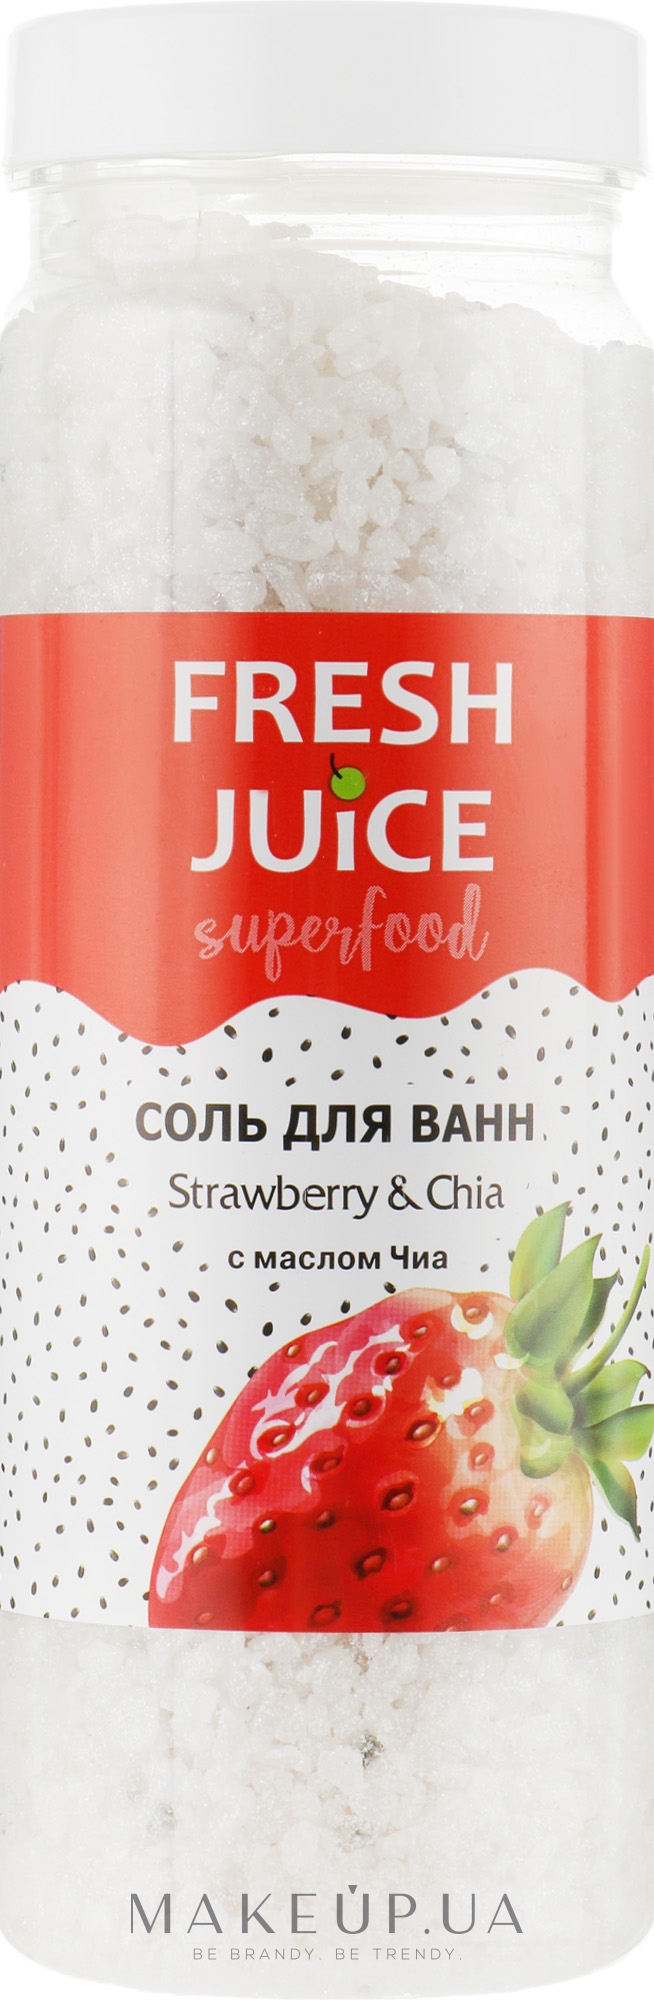 Сіль для ванн "Полуниця й чіа" - Fresh Juice Superfood Strawberry & Chia — фото 700g